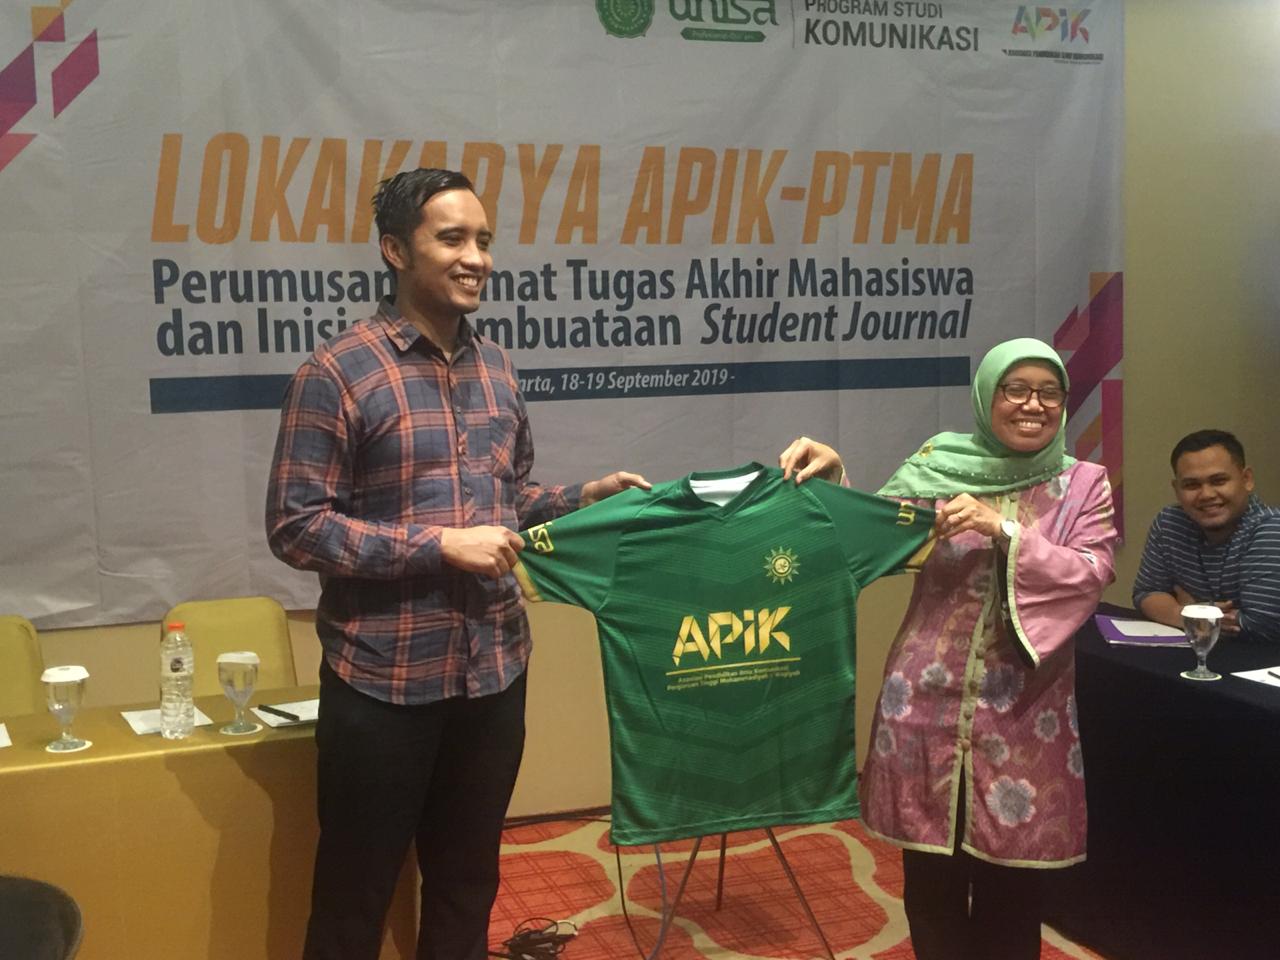 Prodi Komunikasi Gandeng APIK PTMA Gelar Lokakarya  Format Tugas Akhir Mahasiswa Ilmu Komunikasi